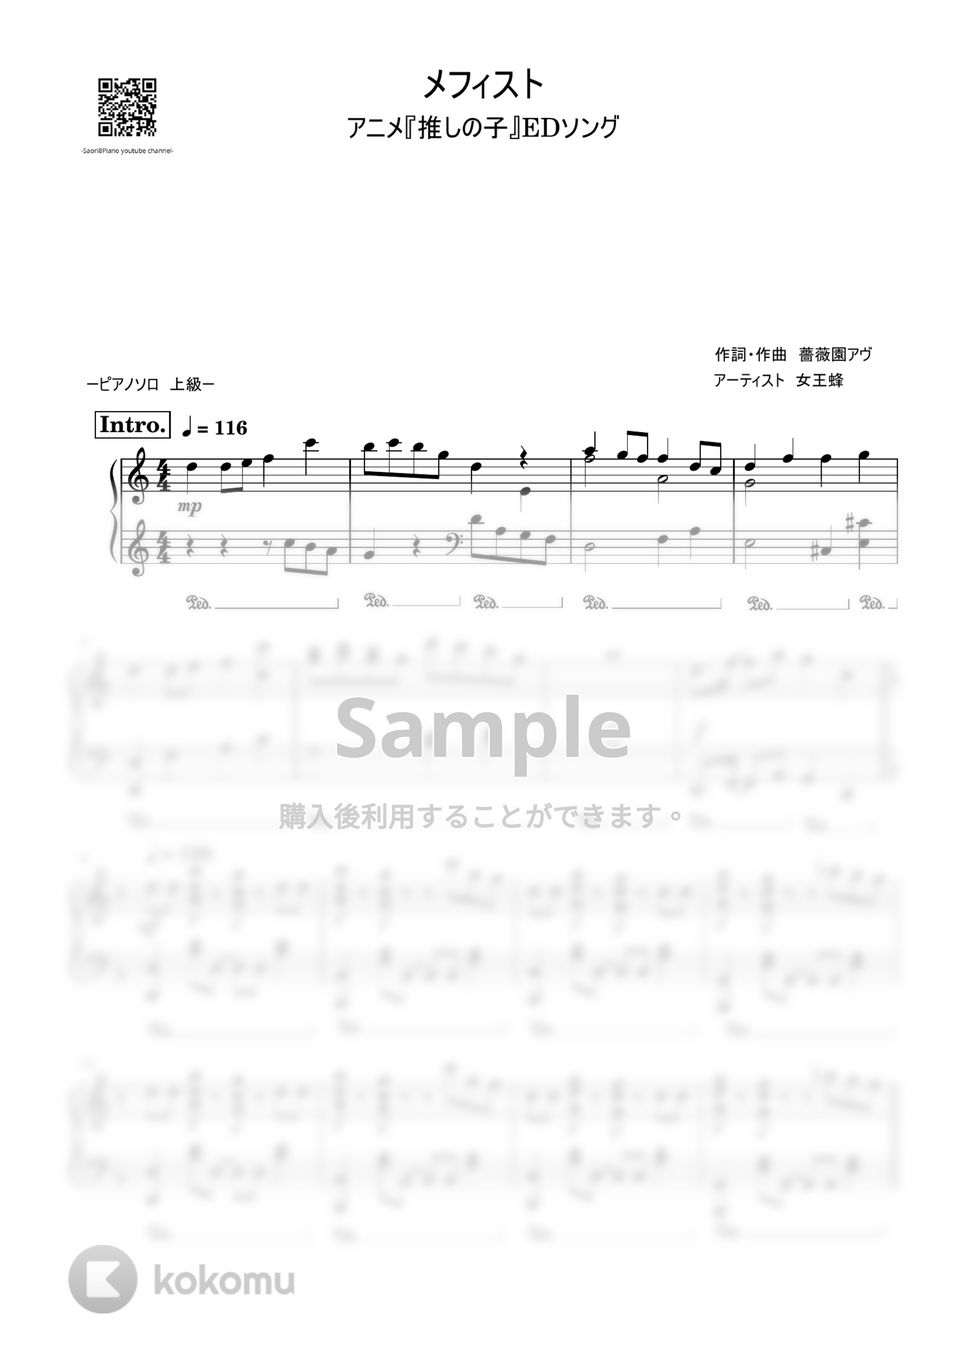 女王蜂 - メフィスト (推しの子EDソング/上級レベル) by Saori8Piano